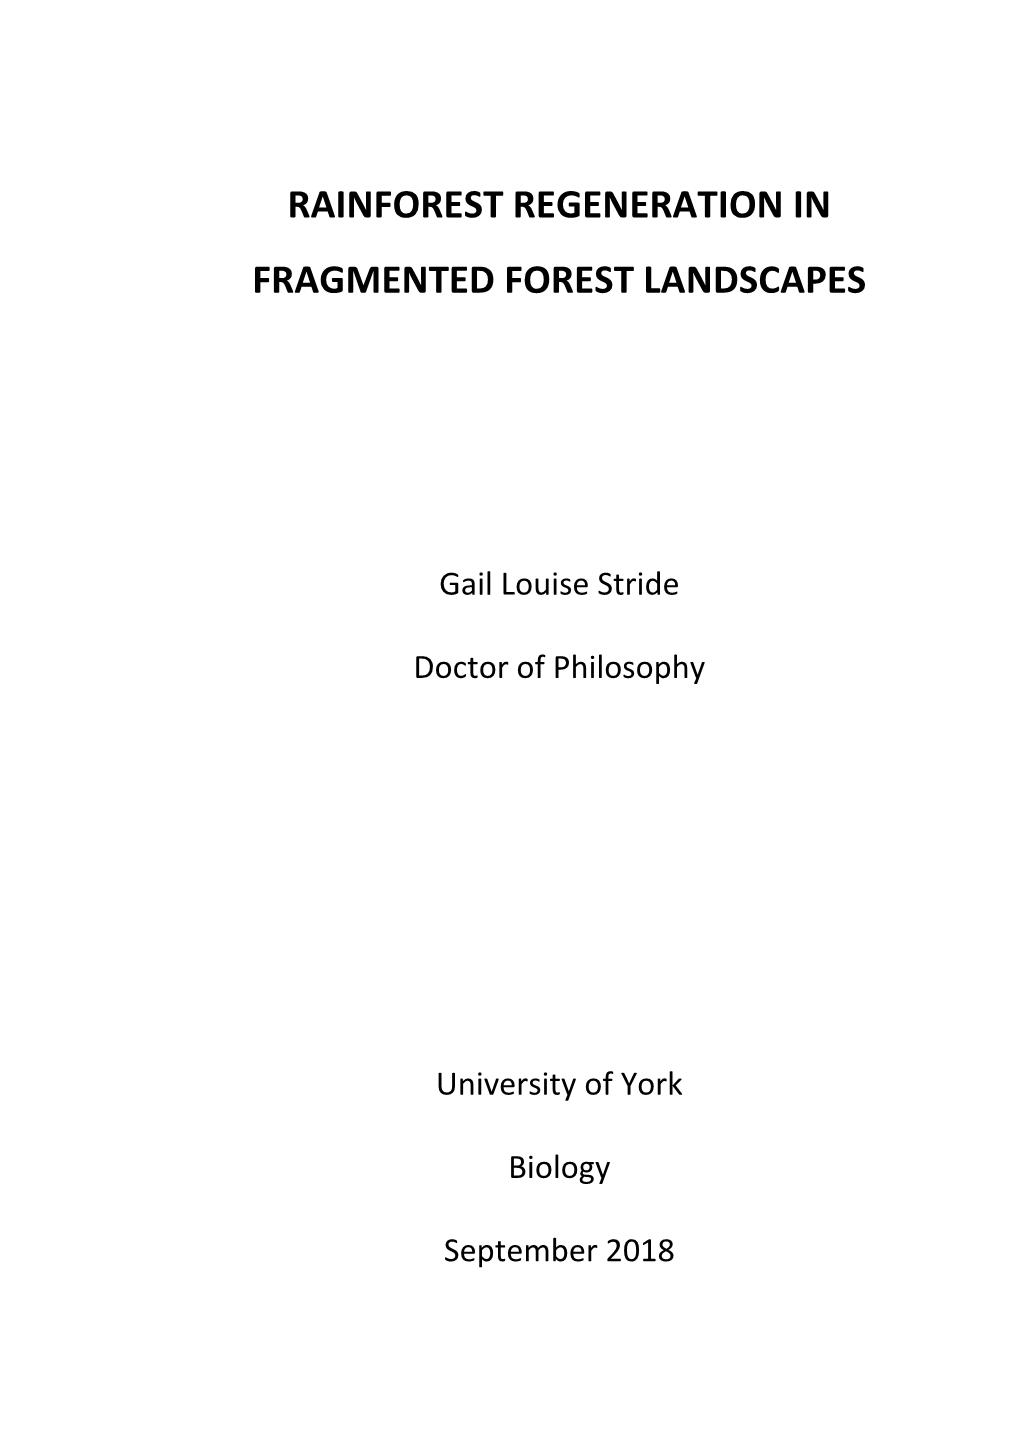 Rainforest Regeneration in Fragmented Forest Landscapes